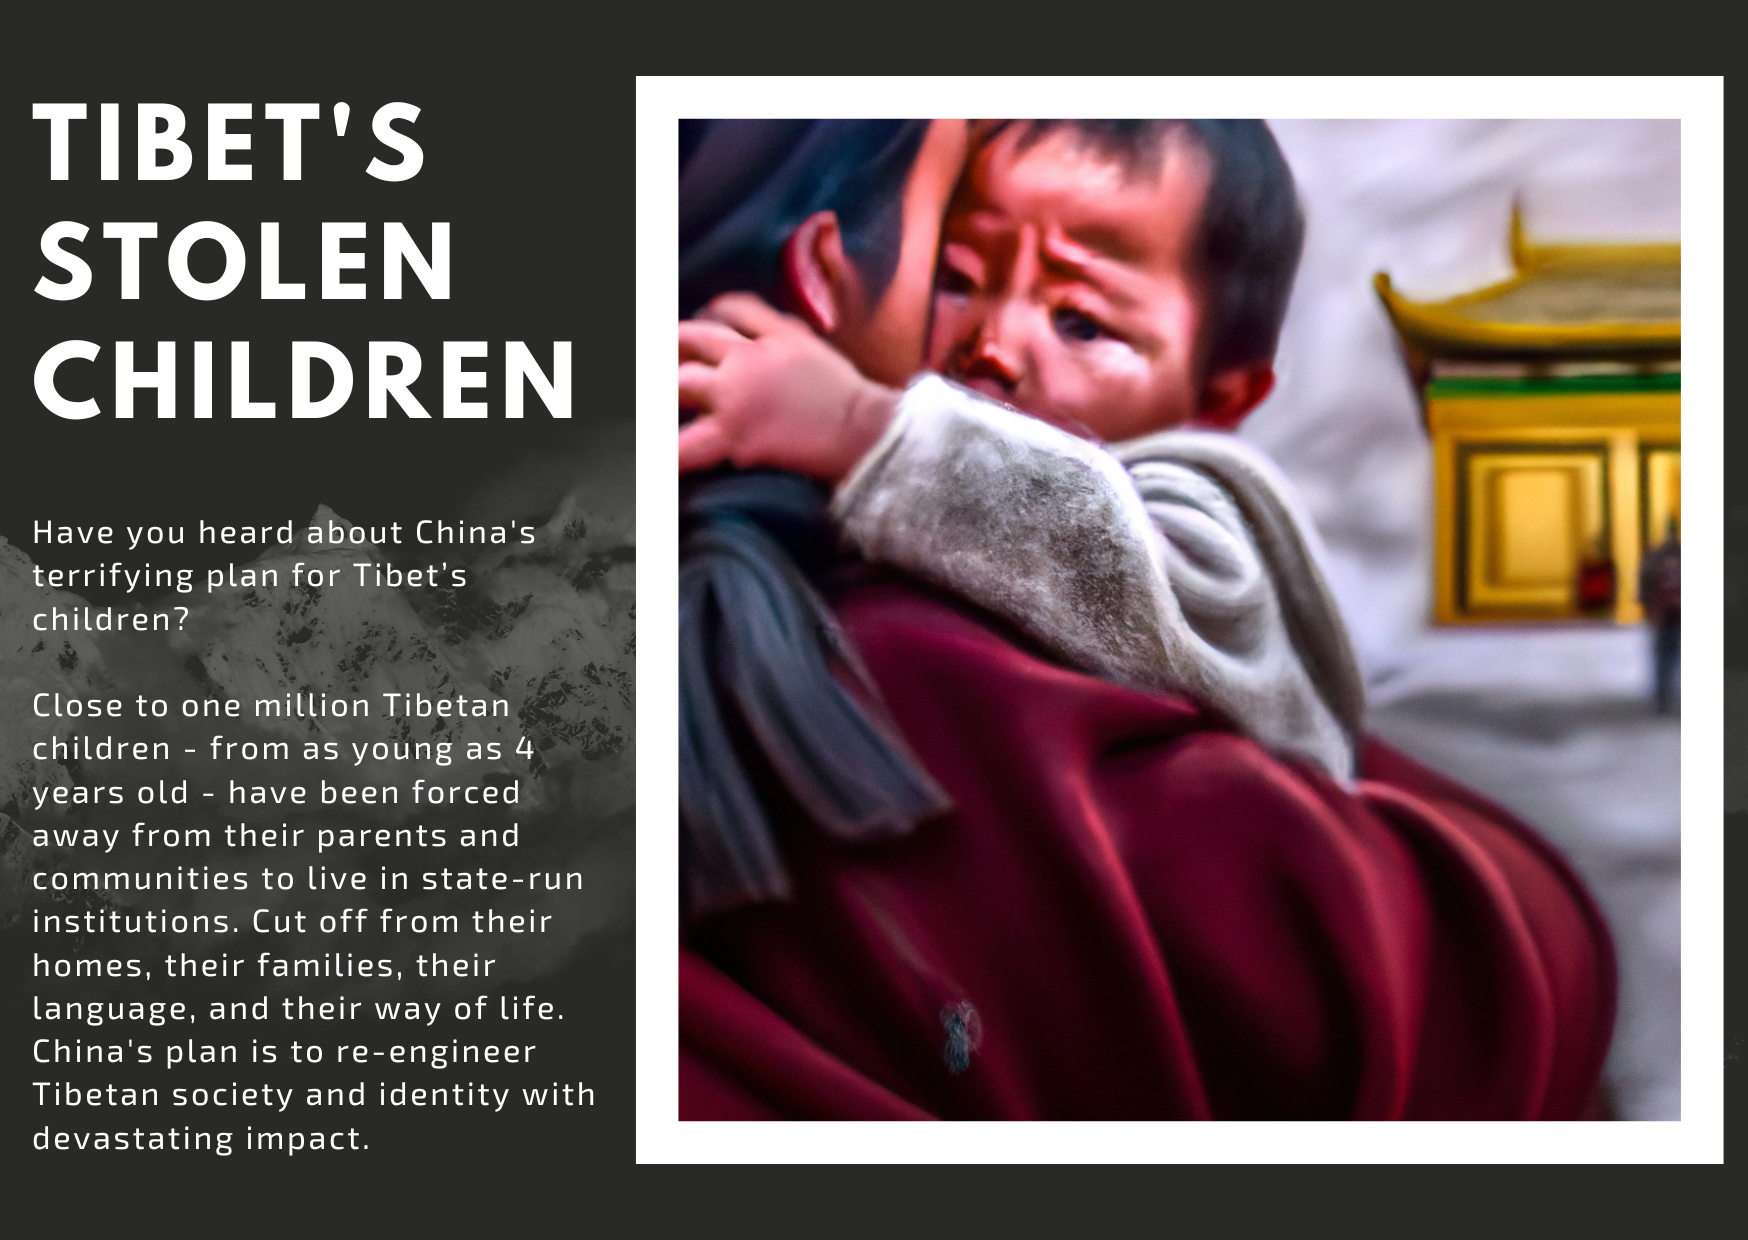 Tibet's stolen children